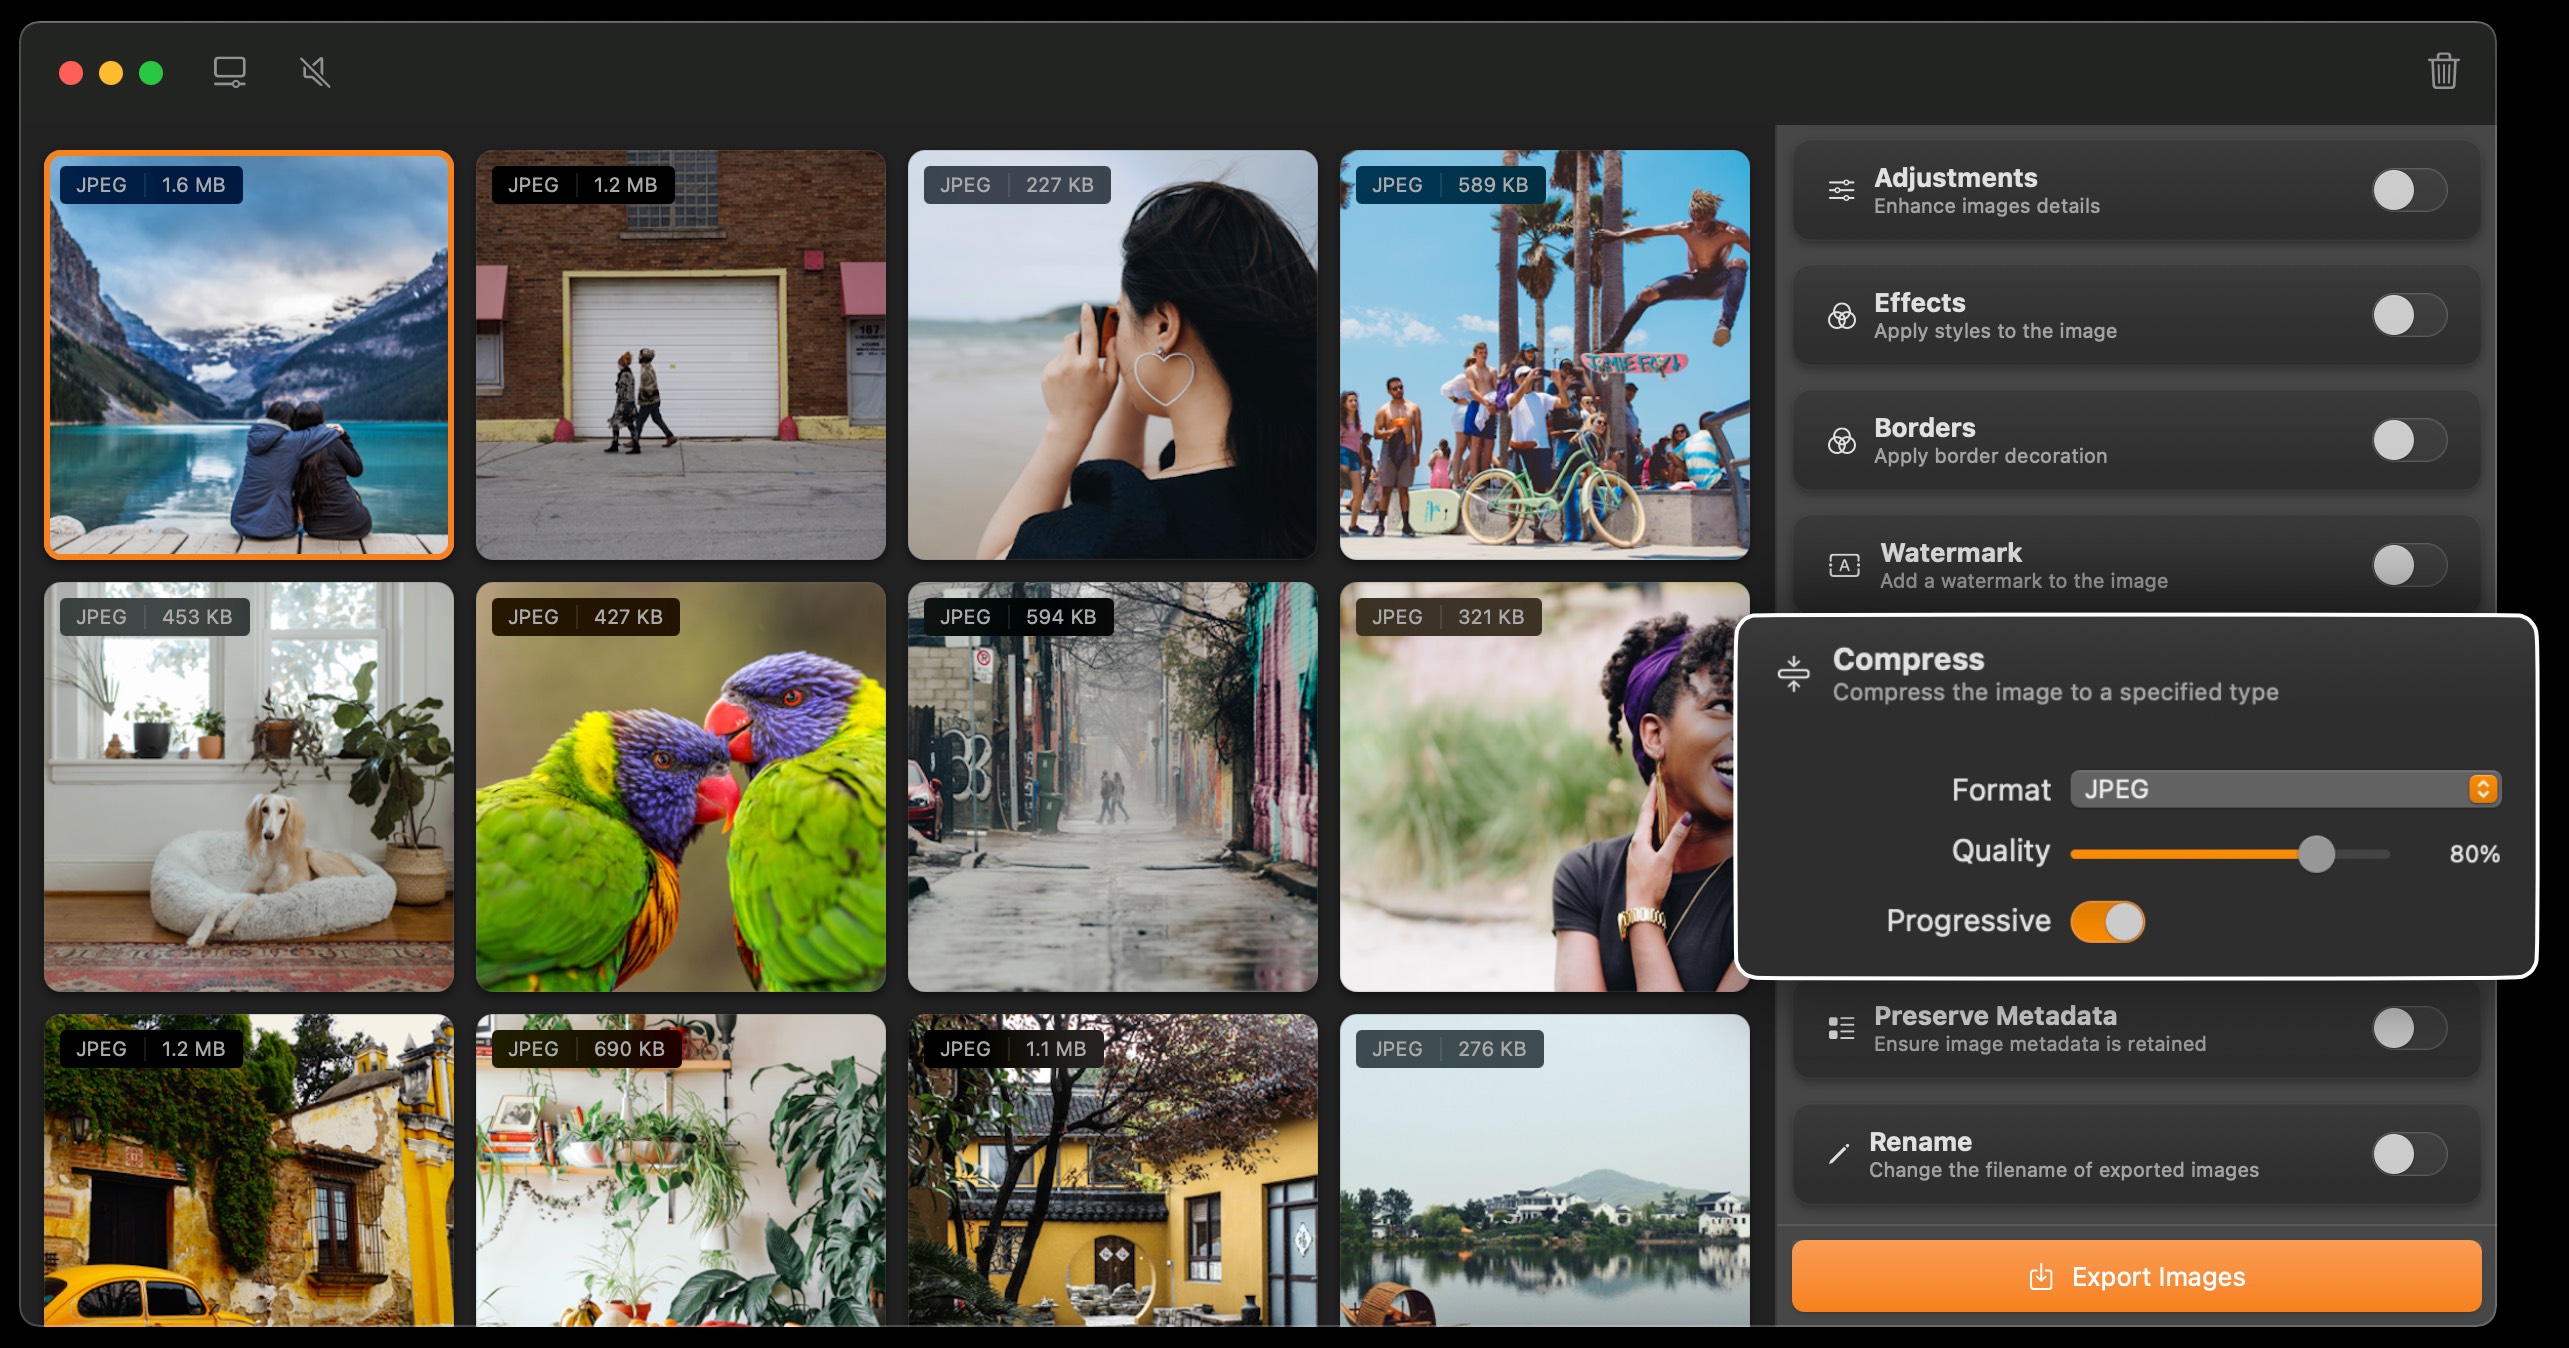 Squash 3 Mac app can compress and convert images.